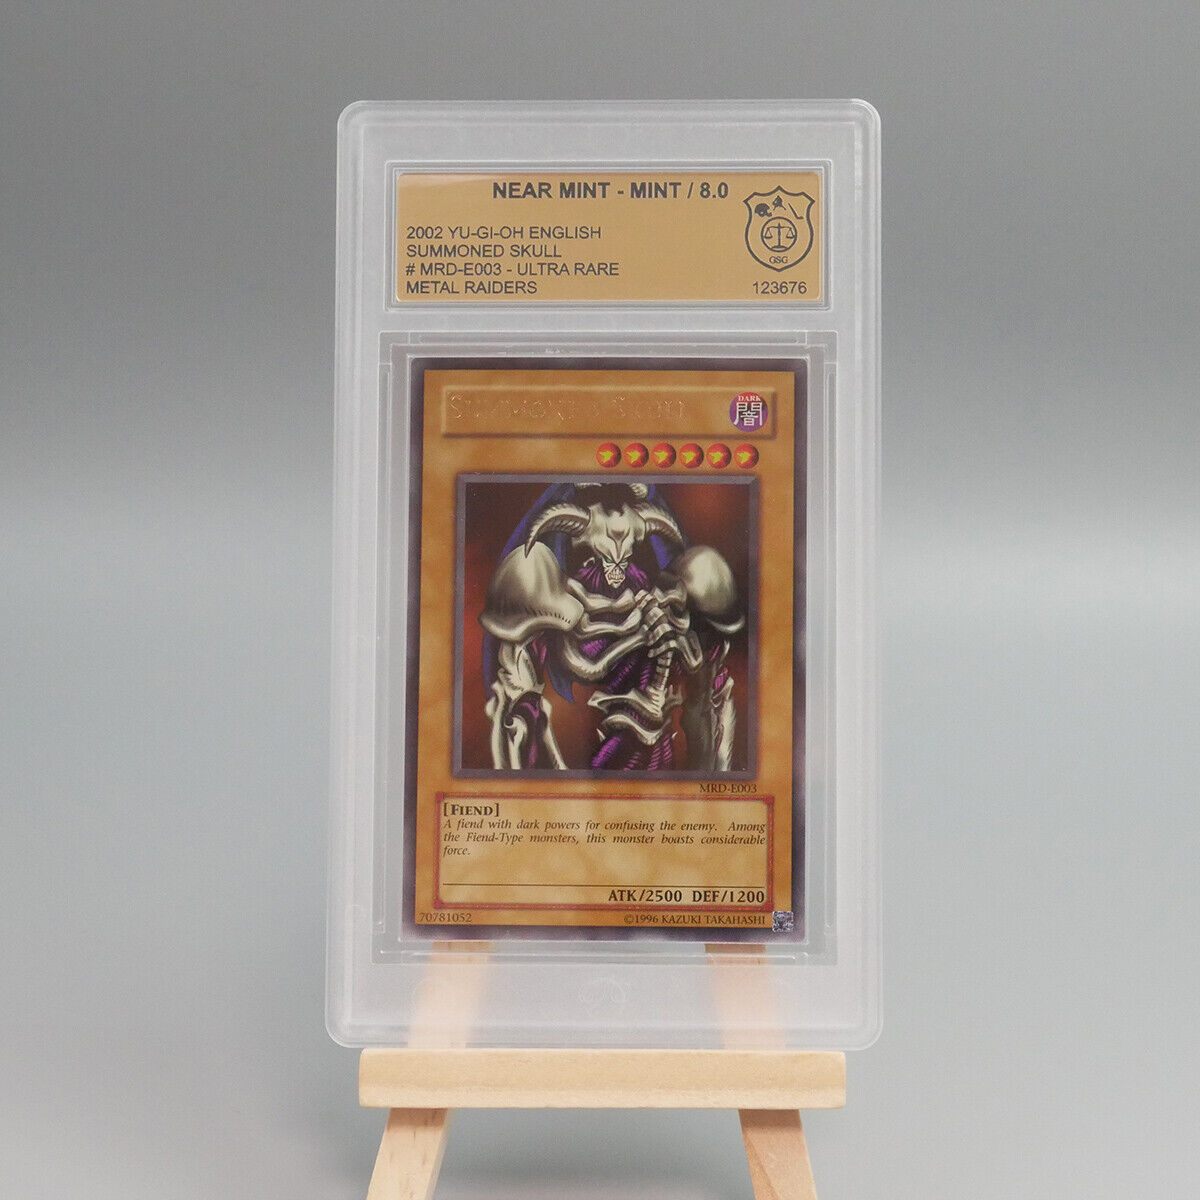 Yugioh Graded Cards - Summoned Skull [MRD-E003] 8.0 Near Mint - Mint - GSG